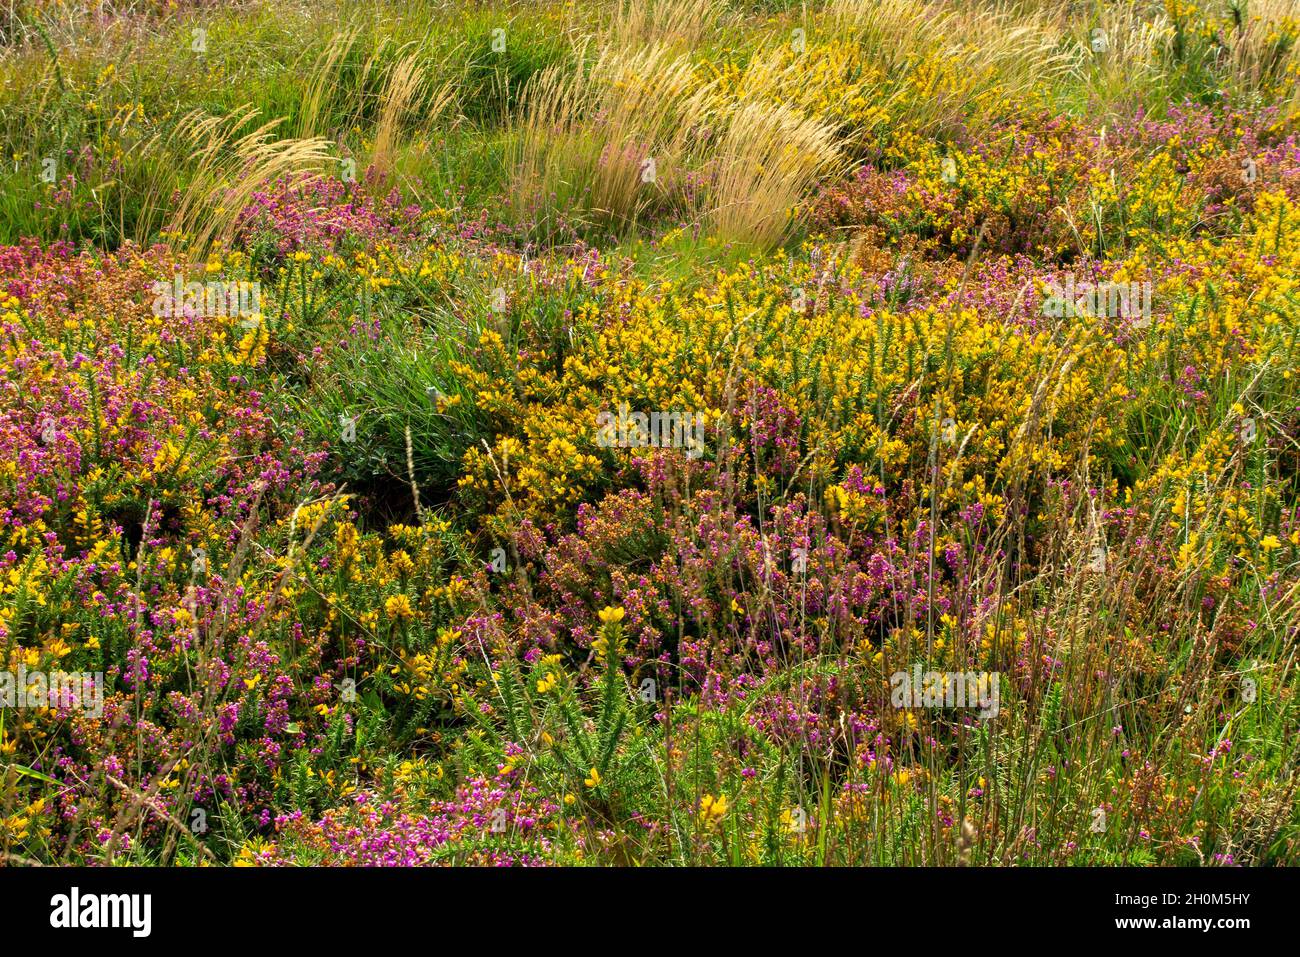 Gorse et bruyère à la fin de l'été fleurissent dans la réserve naturelle nationale de Lizard, dans le sud-ouest de Cornwall Angleterre Banque D'Images